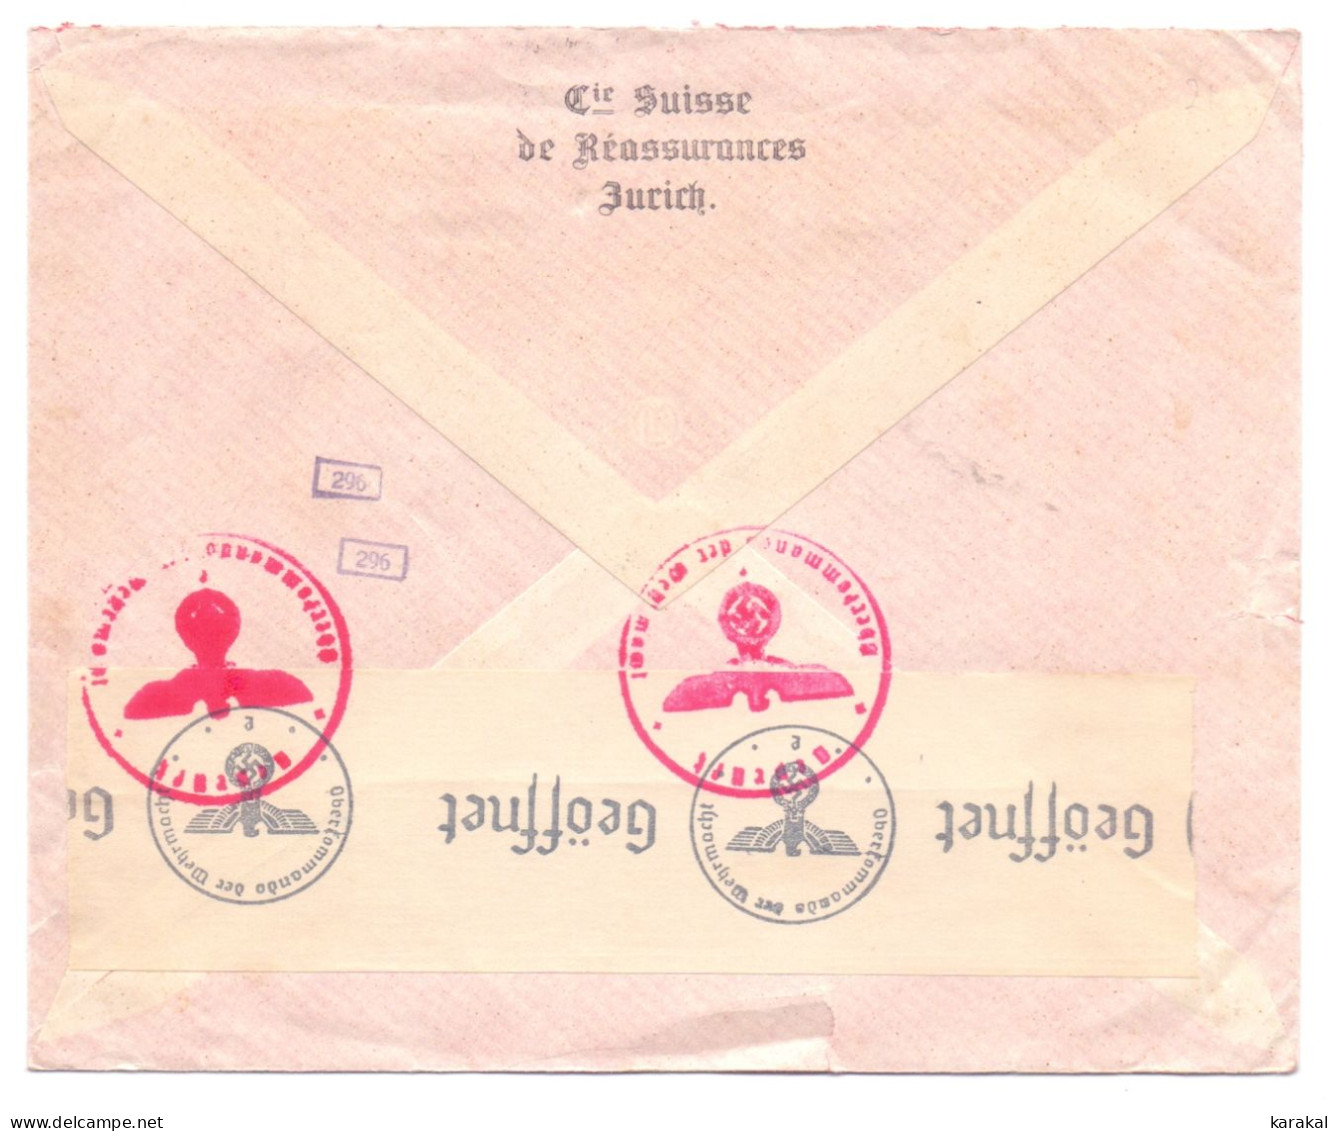 Suisse Switzerland Affranchissement Machine 105 Le Patriotique Lettre Censurée De Zurich à Anvers Belgique 1941 Zensur - Postage Meters